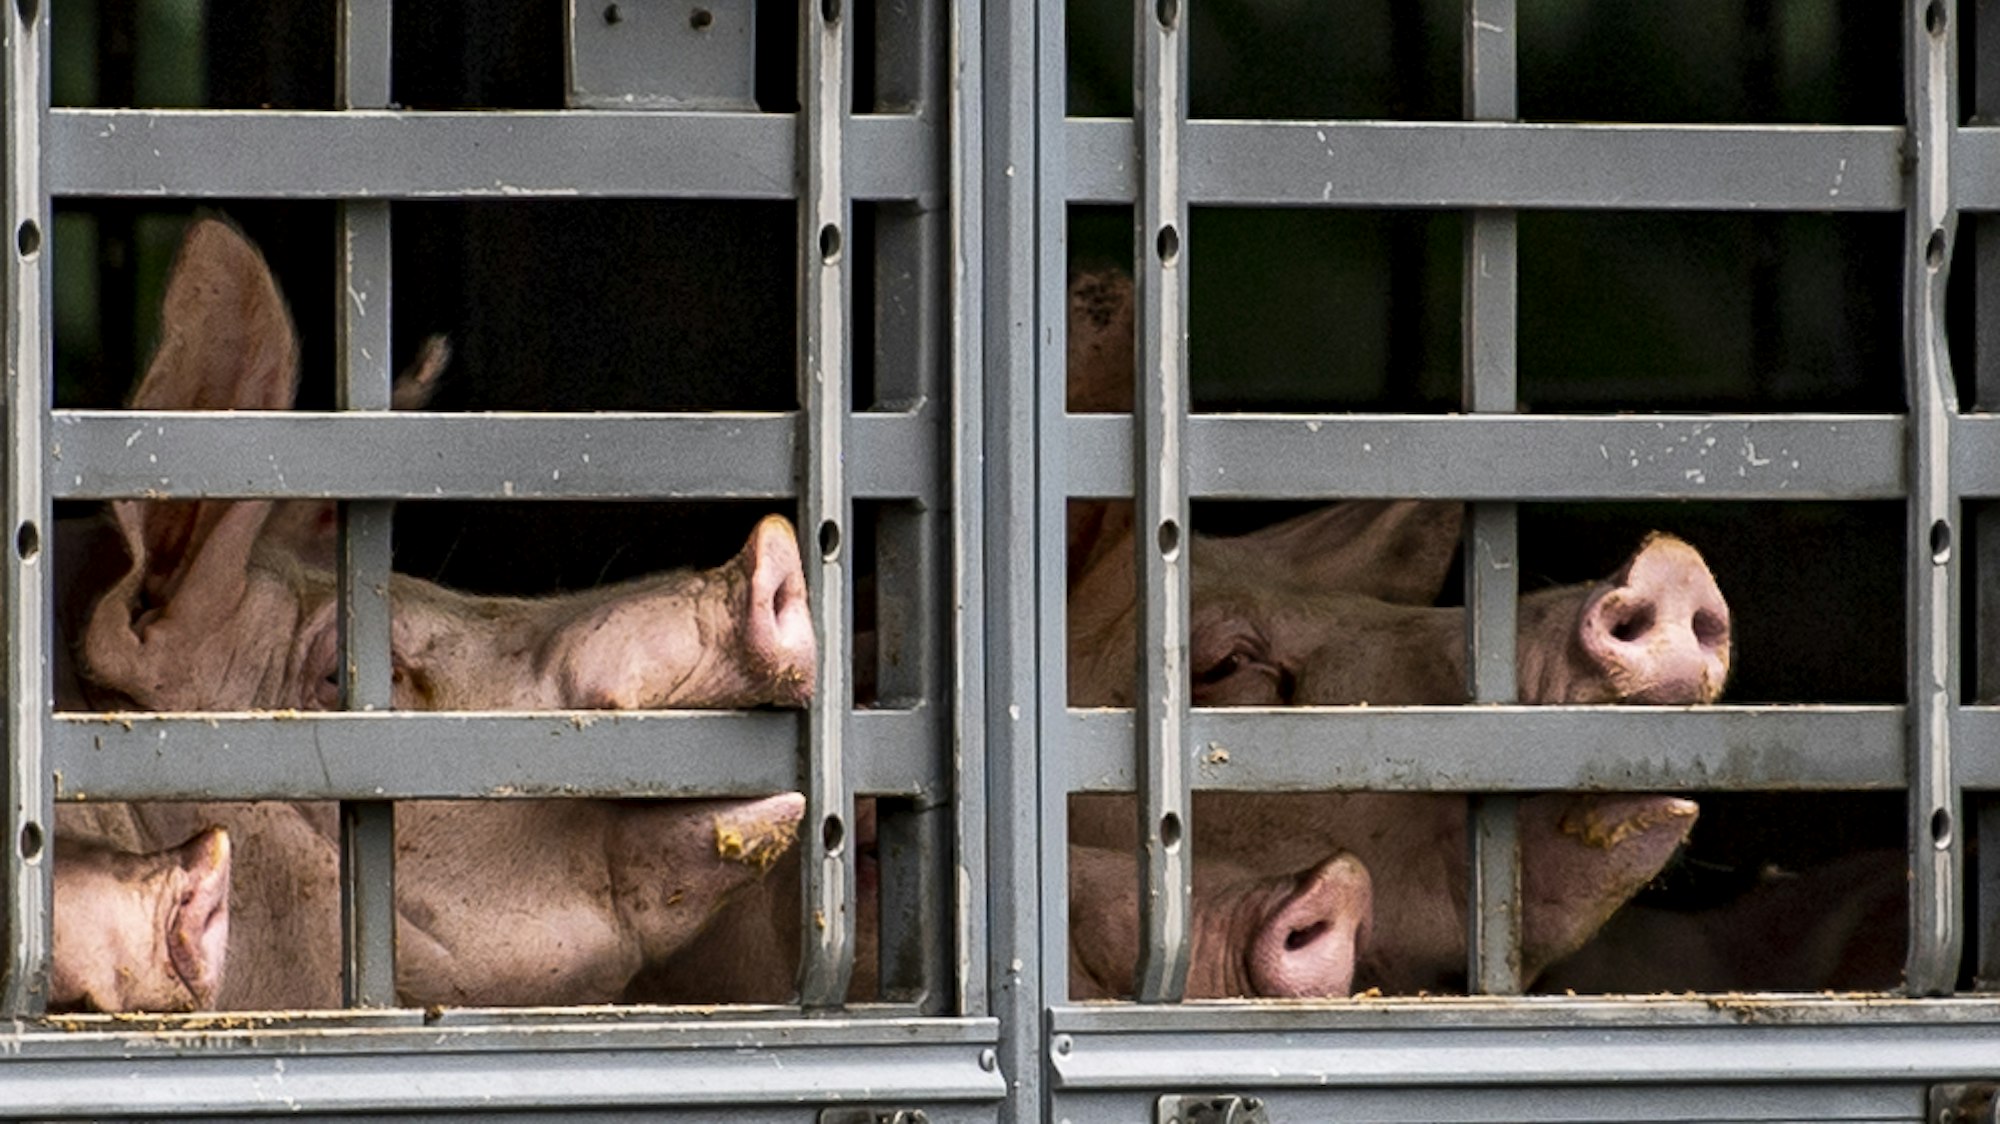 Durch die geöffnete Tür fielen die Schweine in dem Transporter auf die Fahrbahn der Autobahn bei Bonn. Auf dem Fotodrängen sich Schweine in einem Transporter.